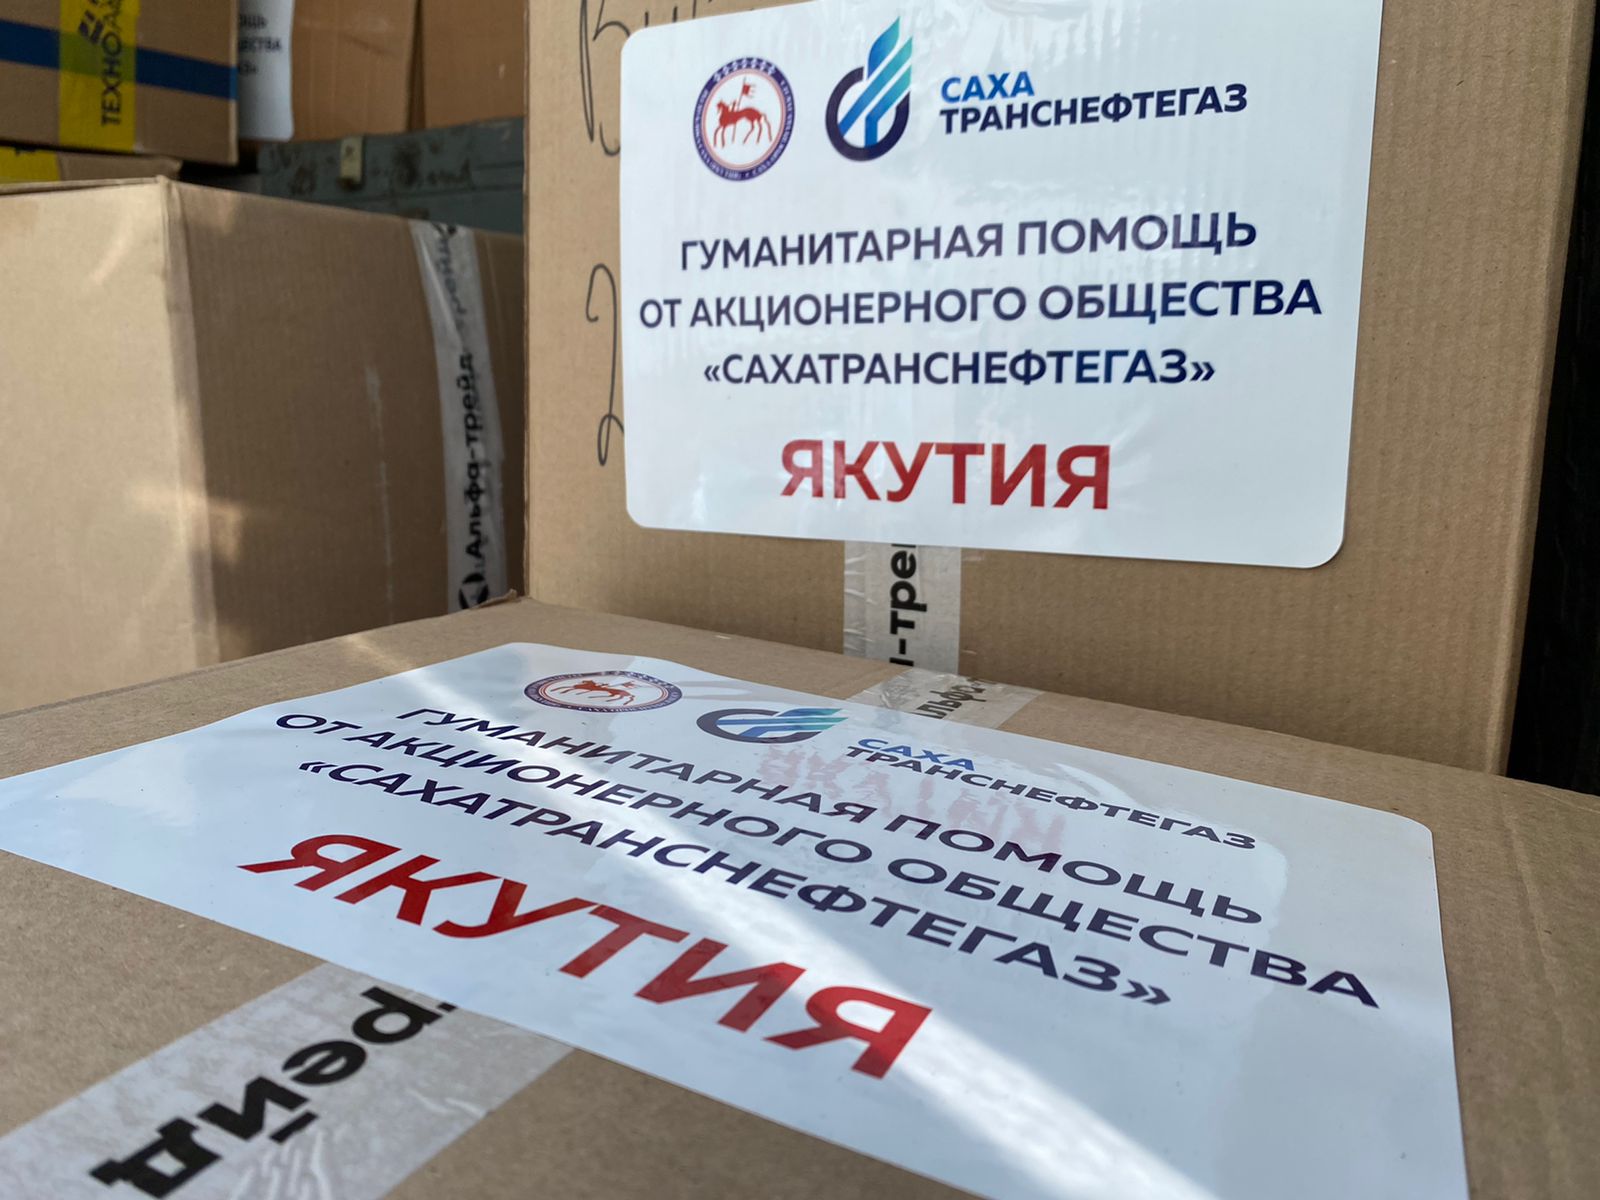 «Сахатранснефтегаз» передал гуманитарную помощь беженцам Донбасса